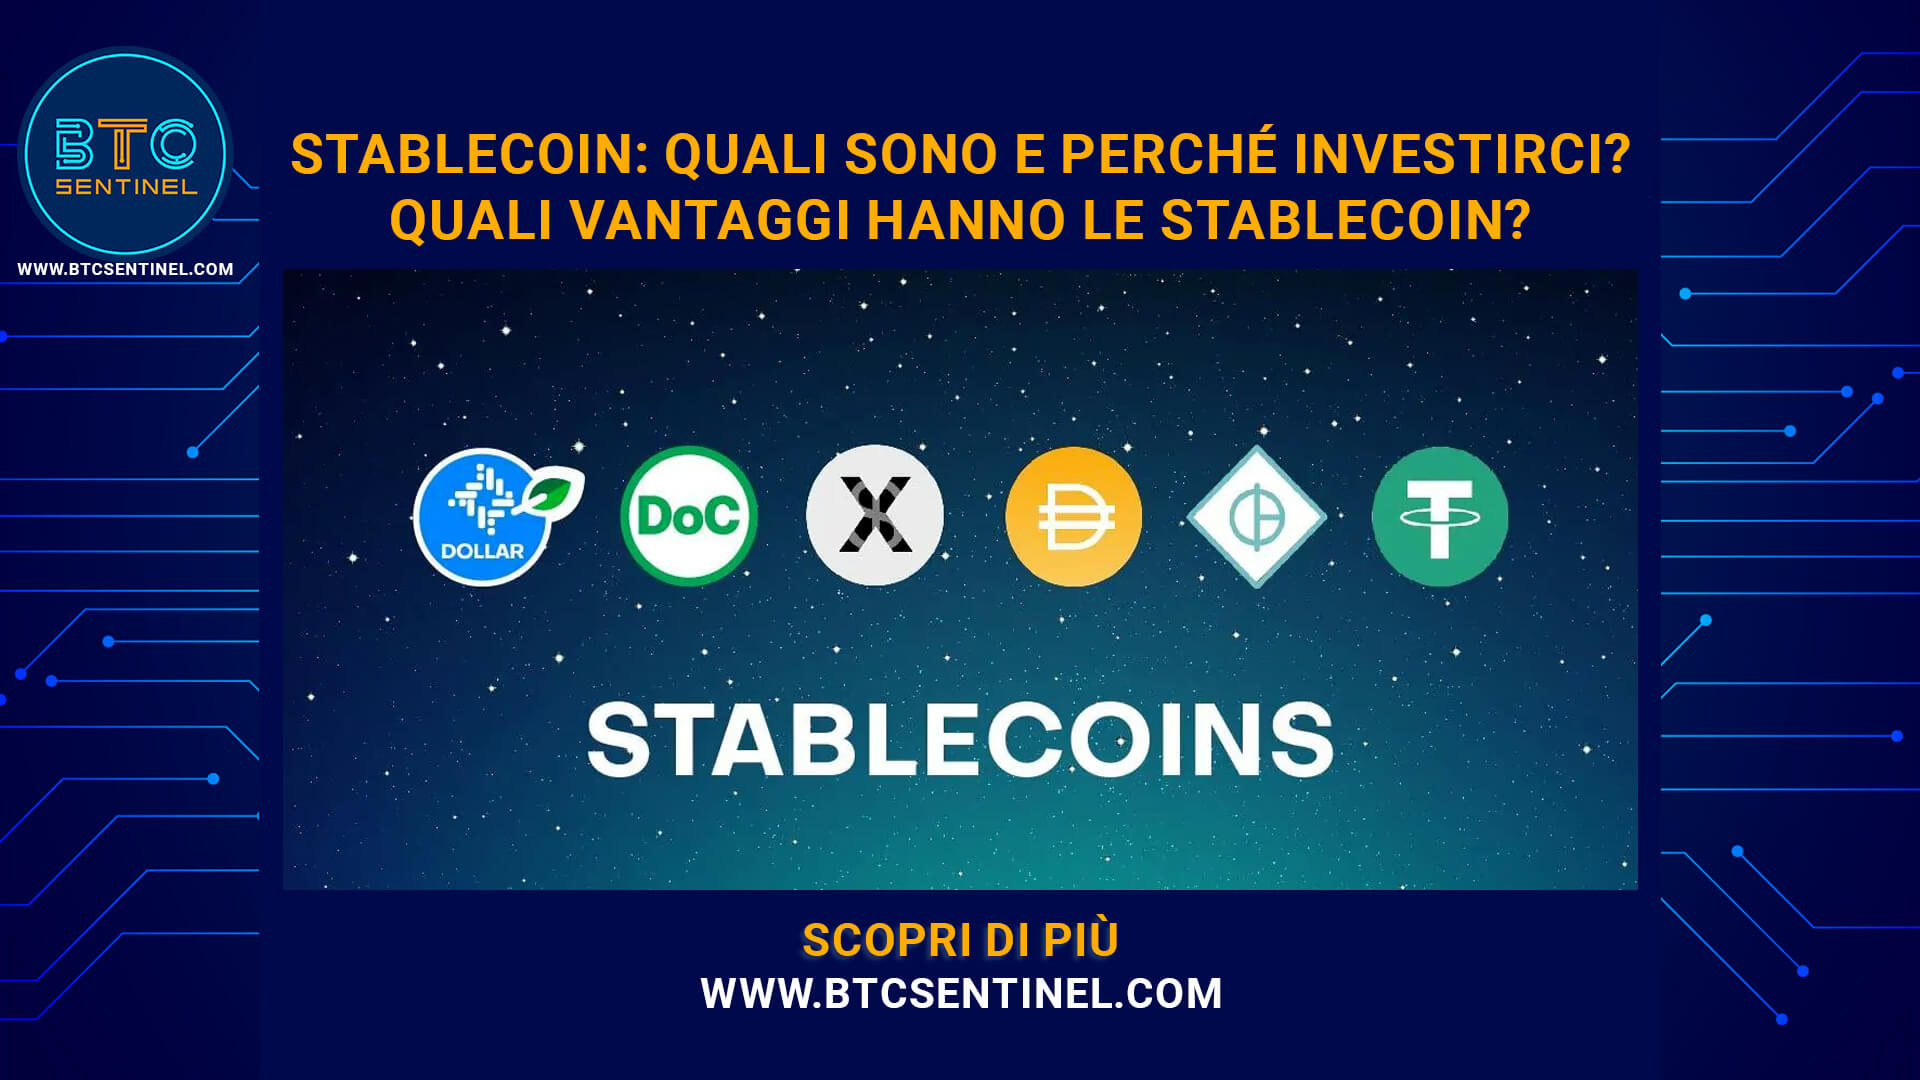 Stablecoin: quali sono le stablecoin e perché investirci?